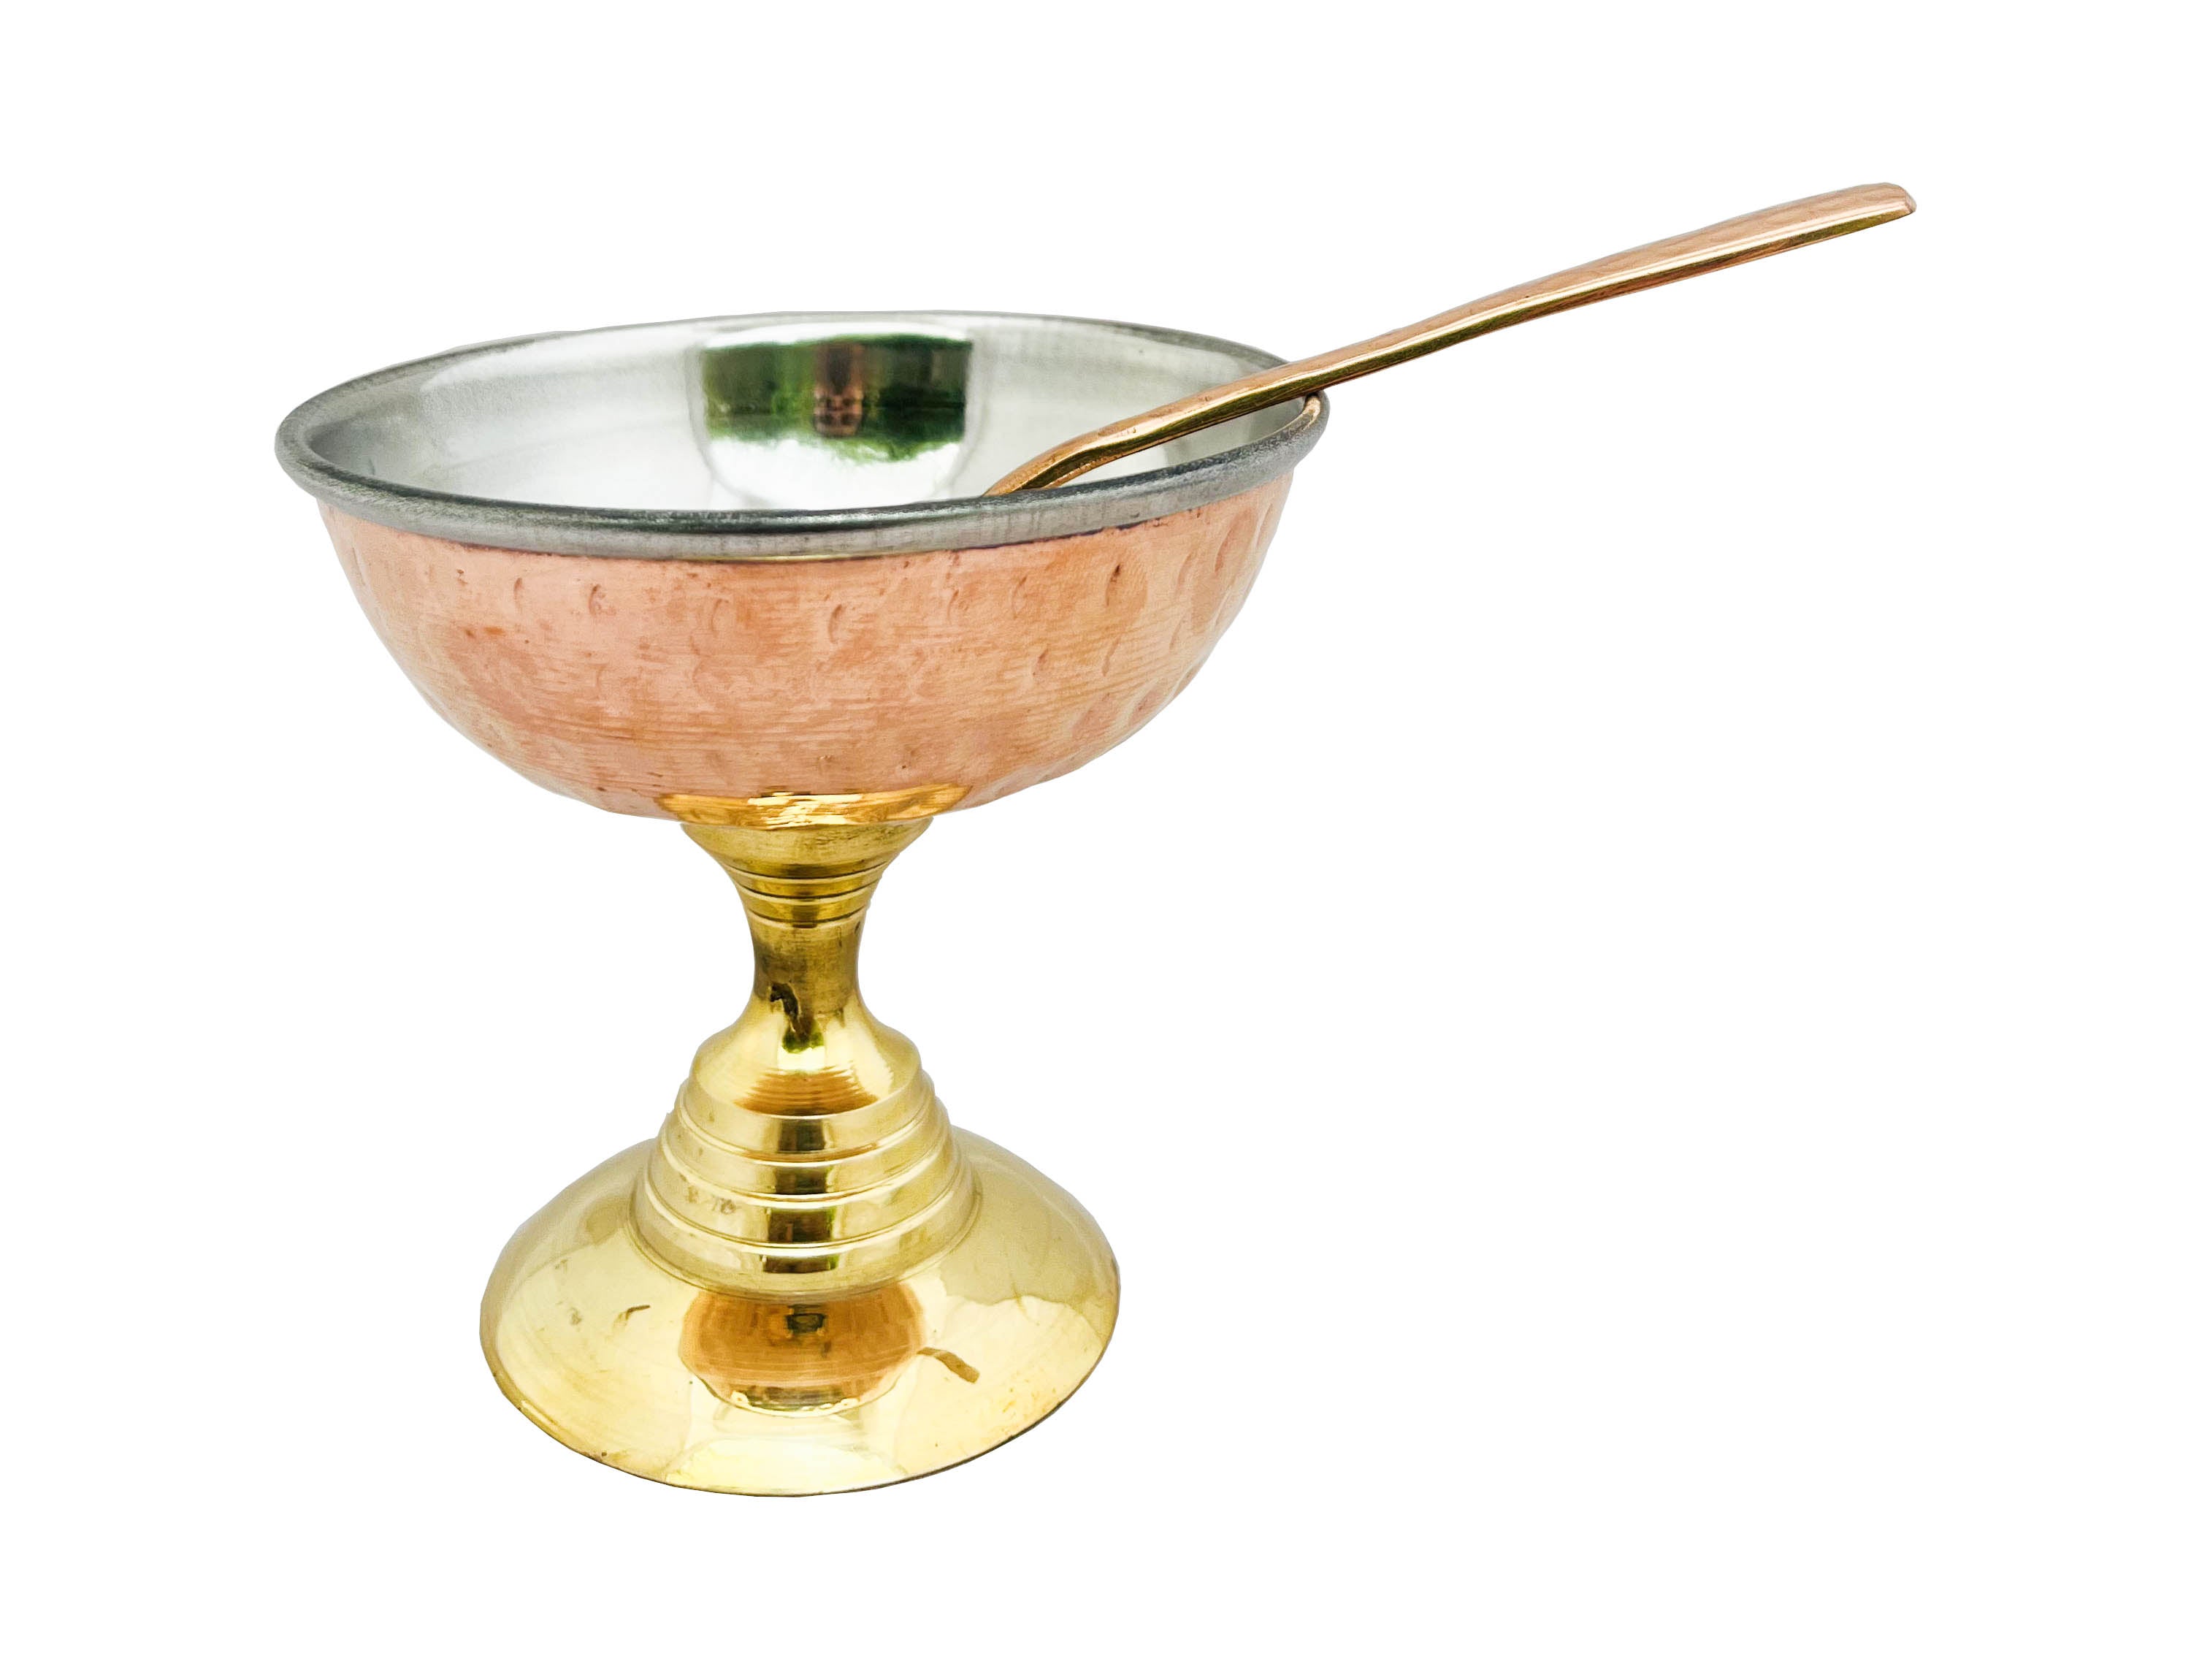 Premium Copper Ice Cream Bowls (Set of 2)